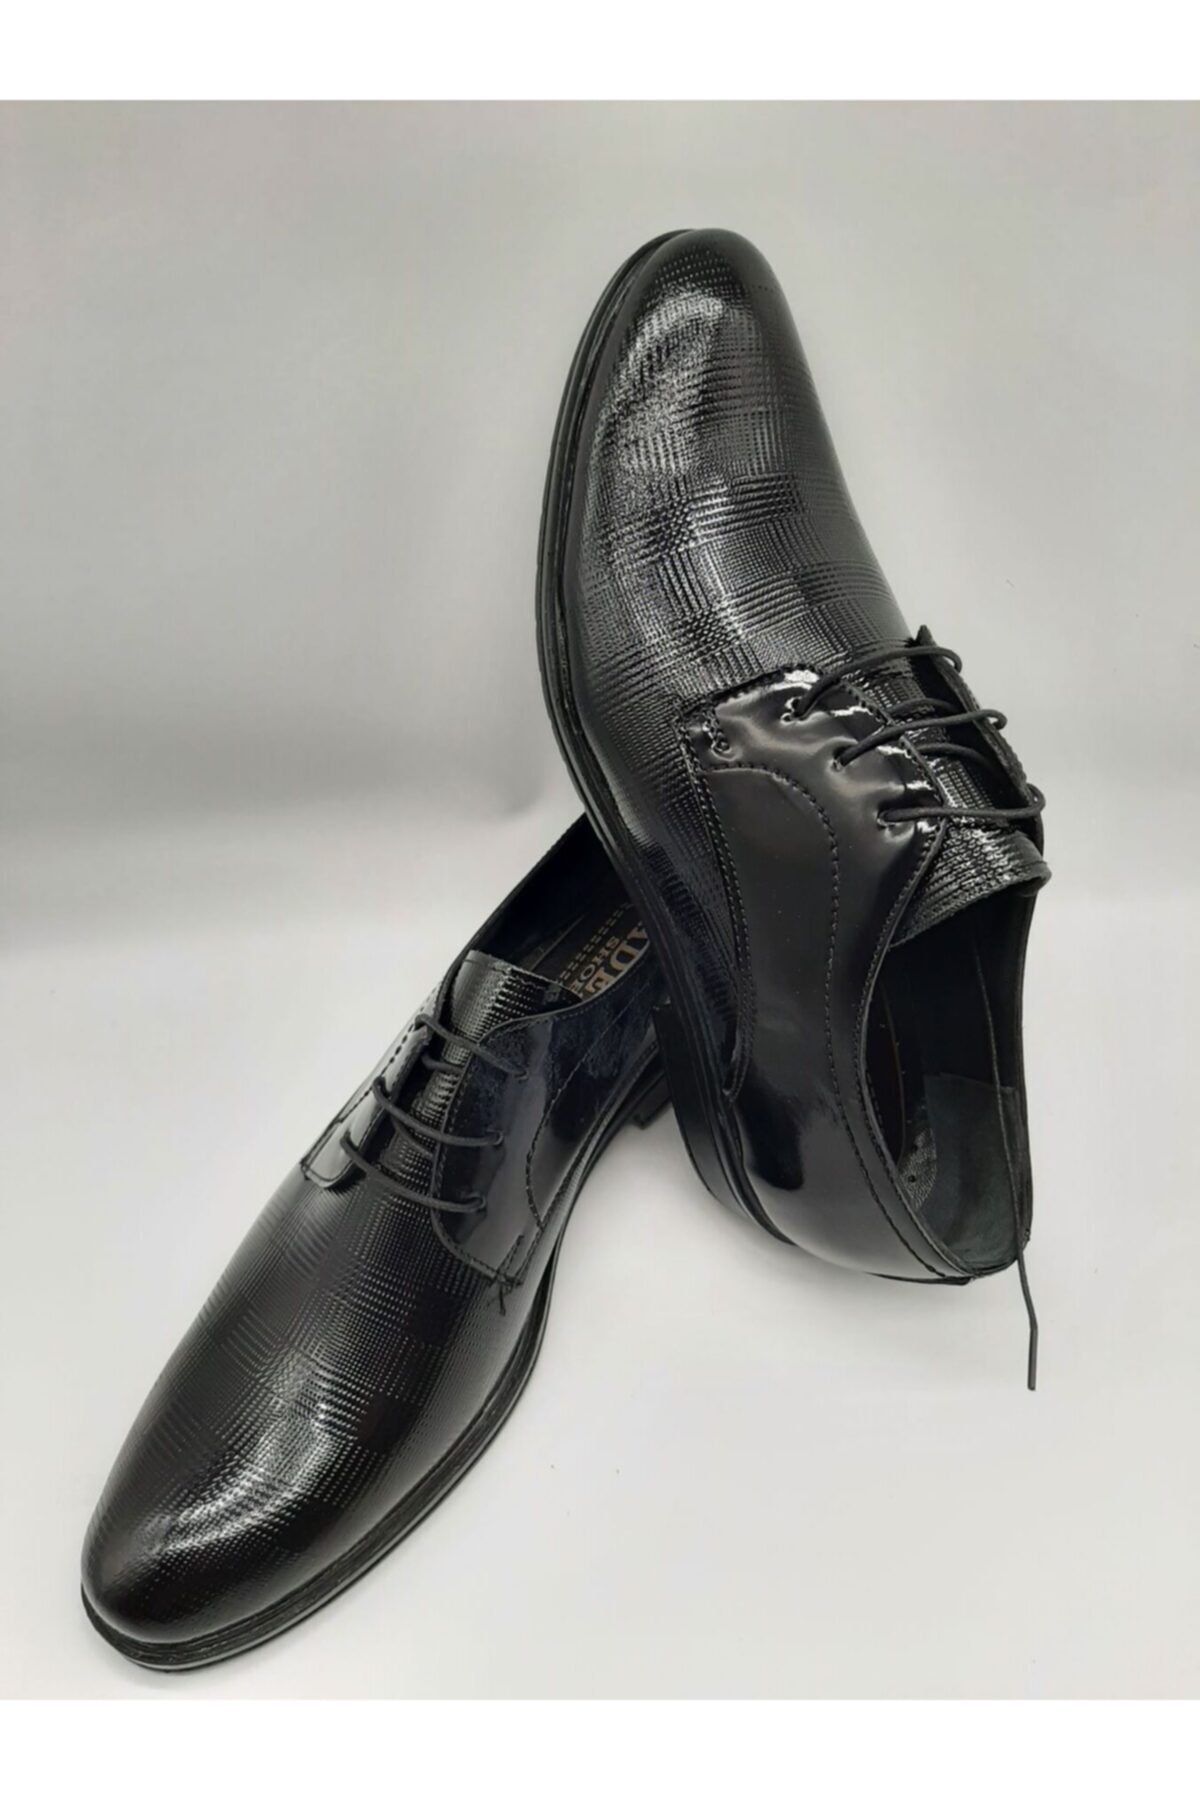 Adel Yeni Model Baskılı Rugan Klasik Ayakkabımız